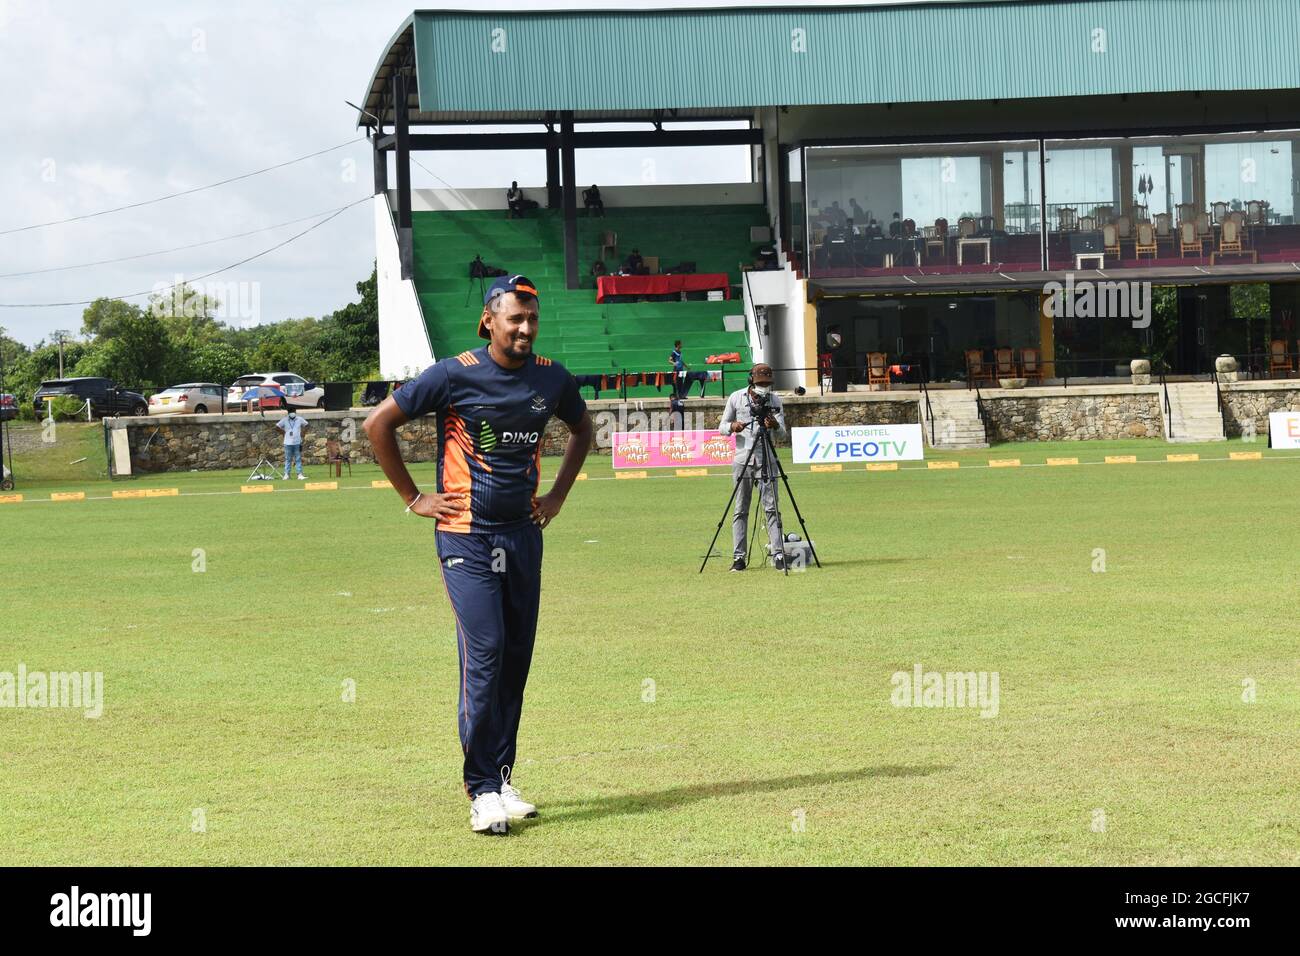 Il cricket dello Sri Lanka Suranga Lakmal si riscalda prima di una partita di cricket. Il pittoresco campo da cricket Army Ordinance. Dombagoda. Sri Lanka. Foto Stock